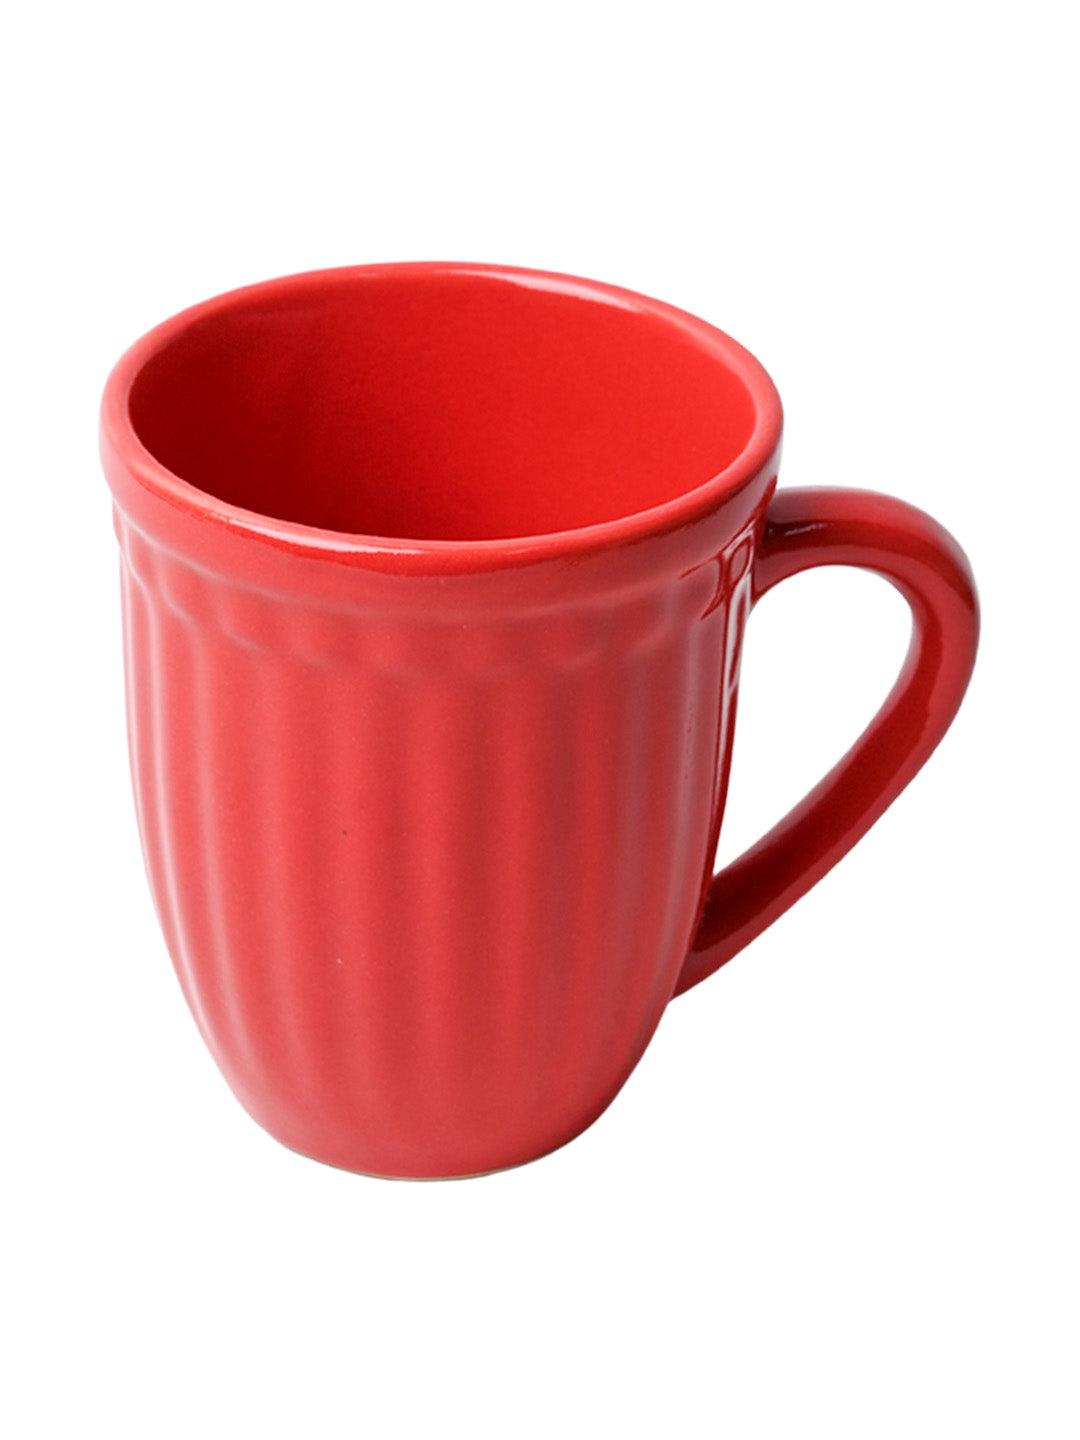 VON CASA Ceramic Coffee & Tea Mug - 300 Ml, Red - MARKET99